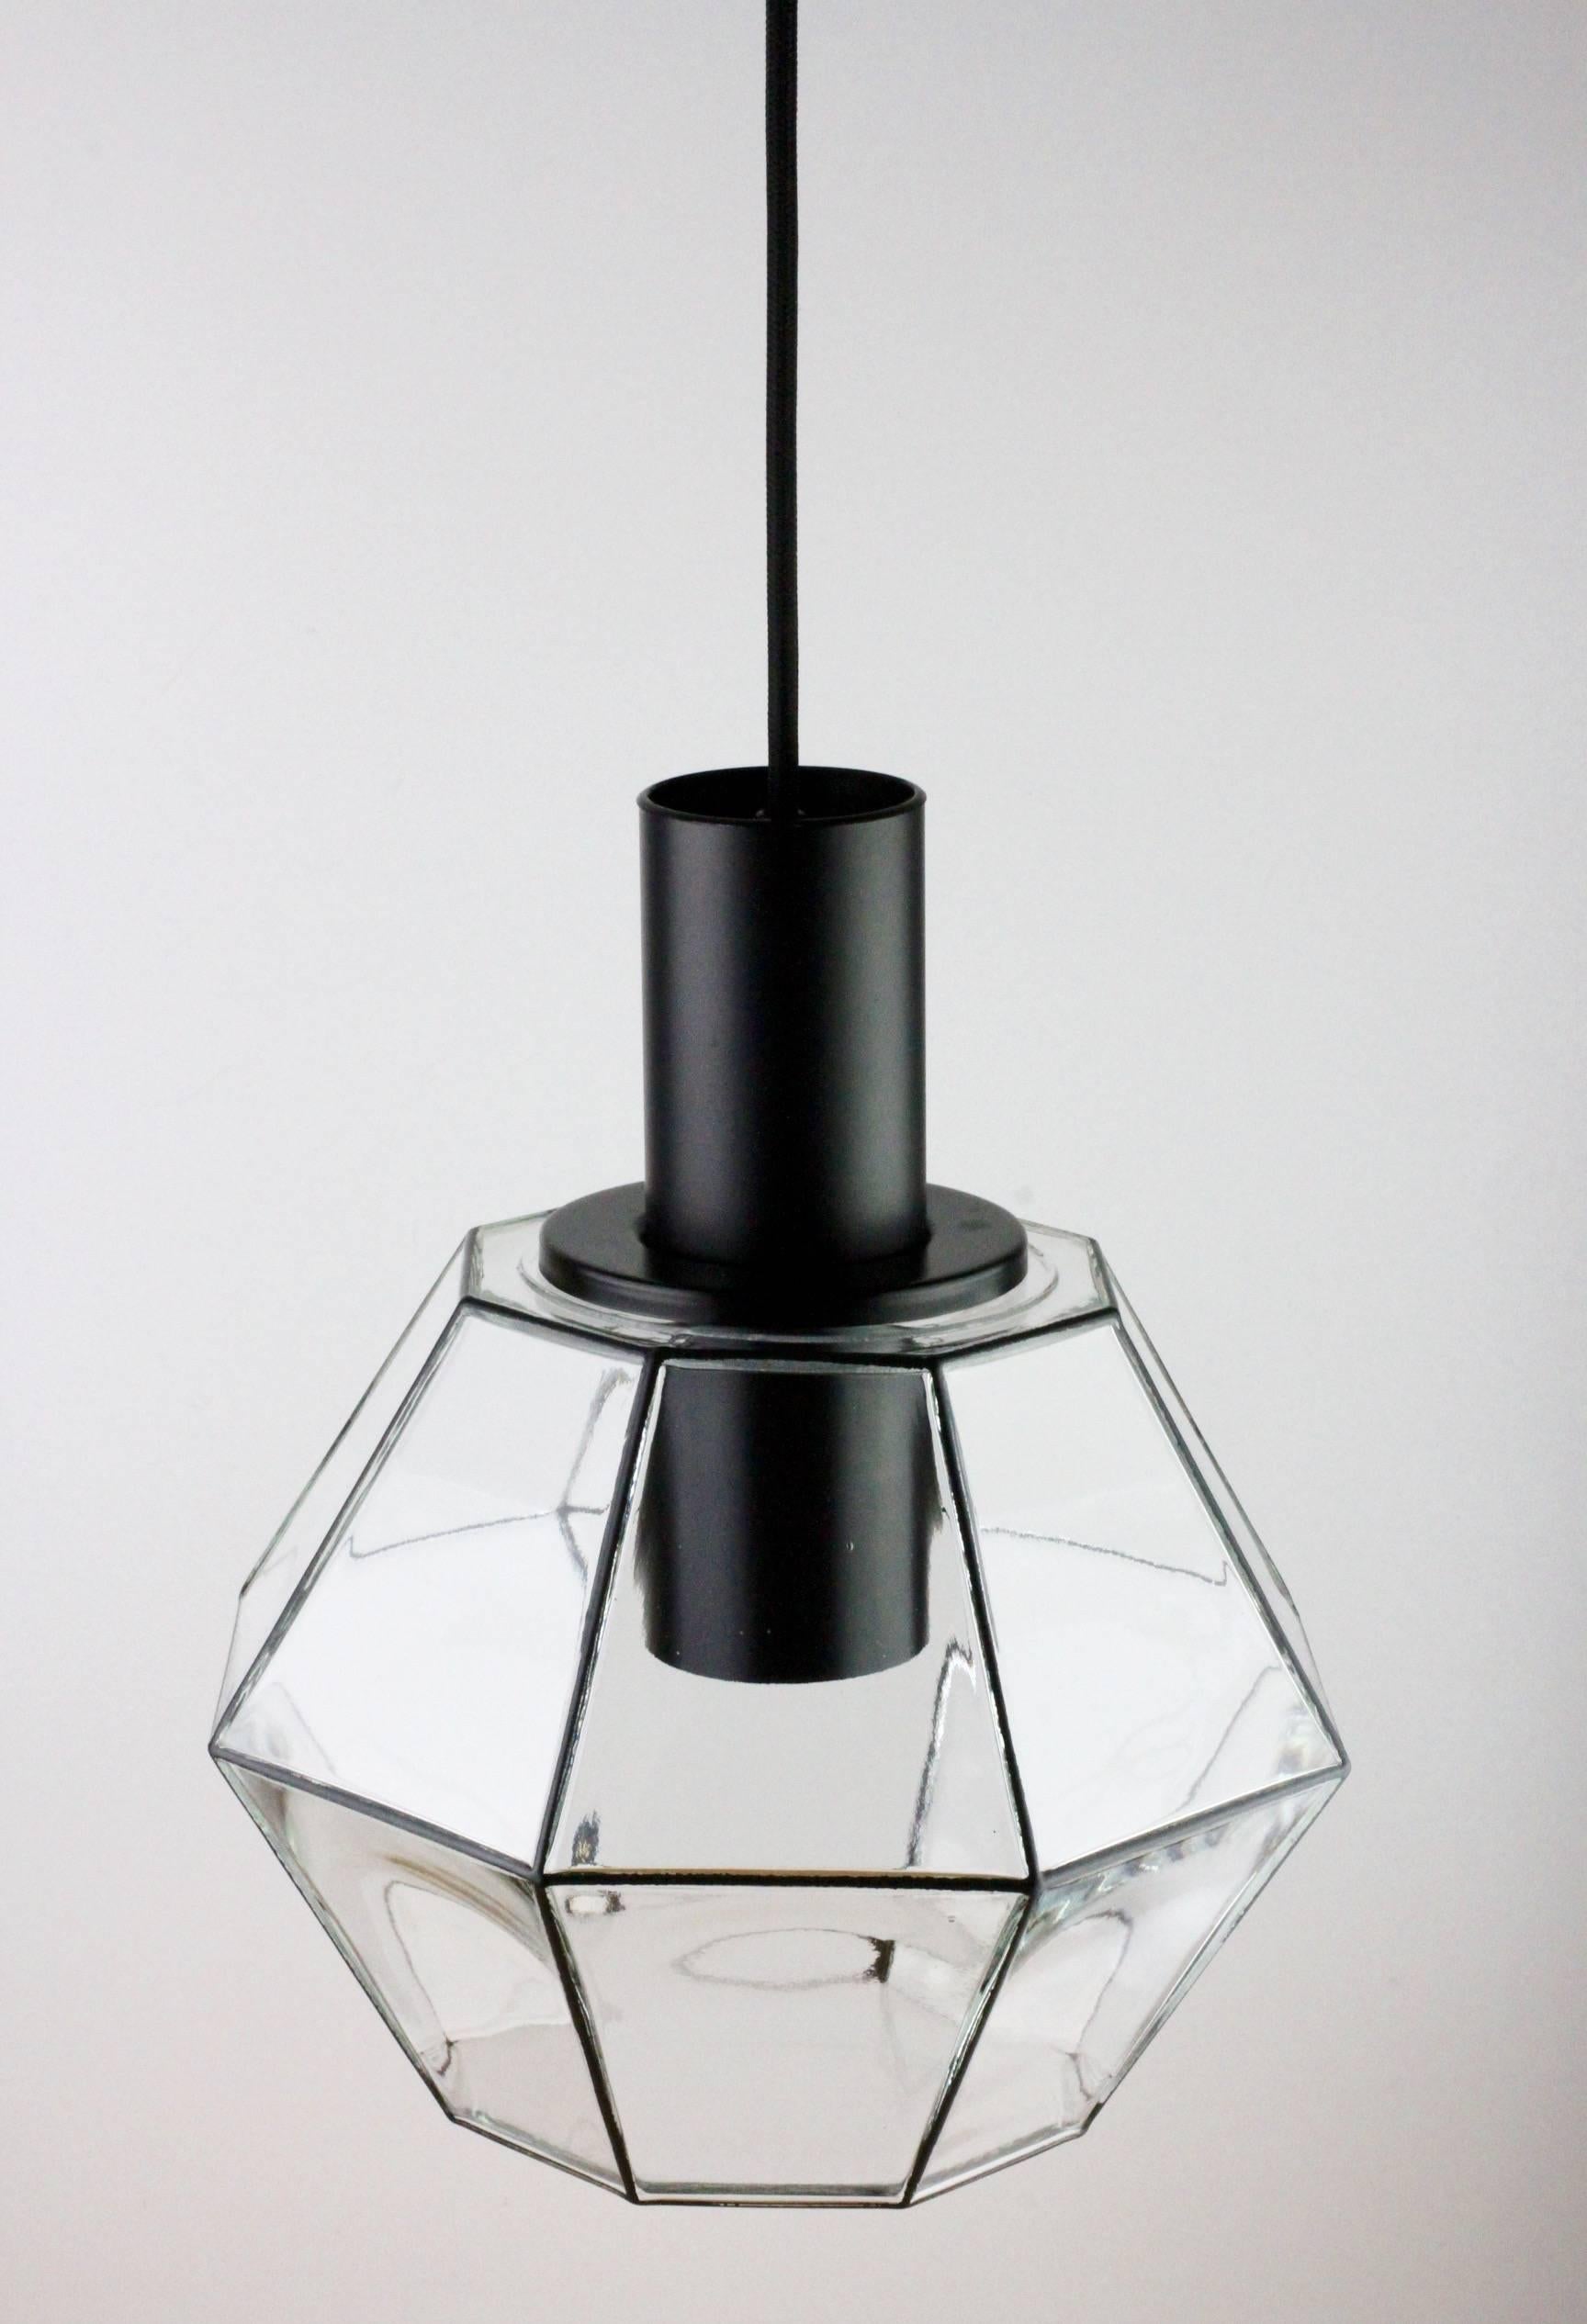 German Ten Minimalist Geometric Black & Clear Glass Pendant Lights by Limburg 1970s